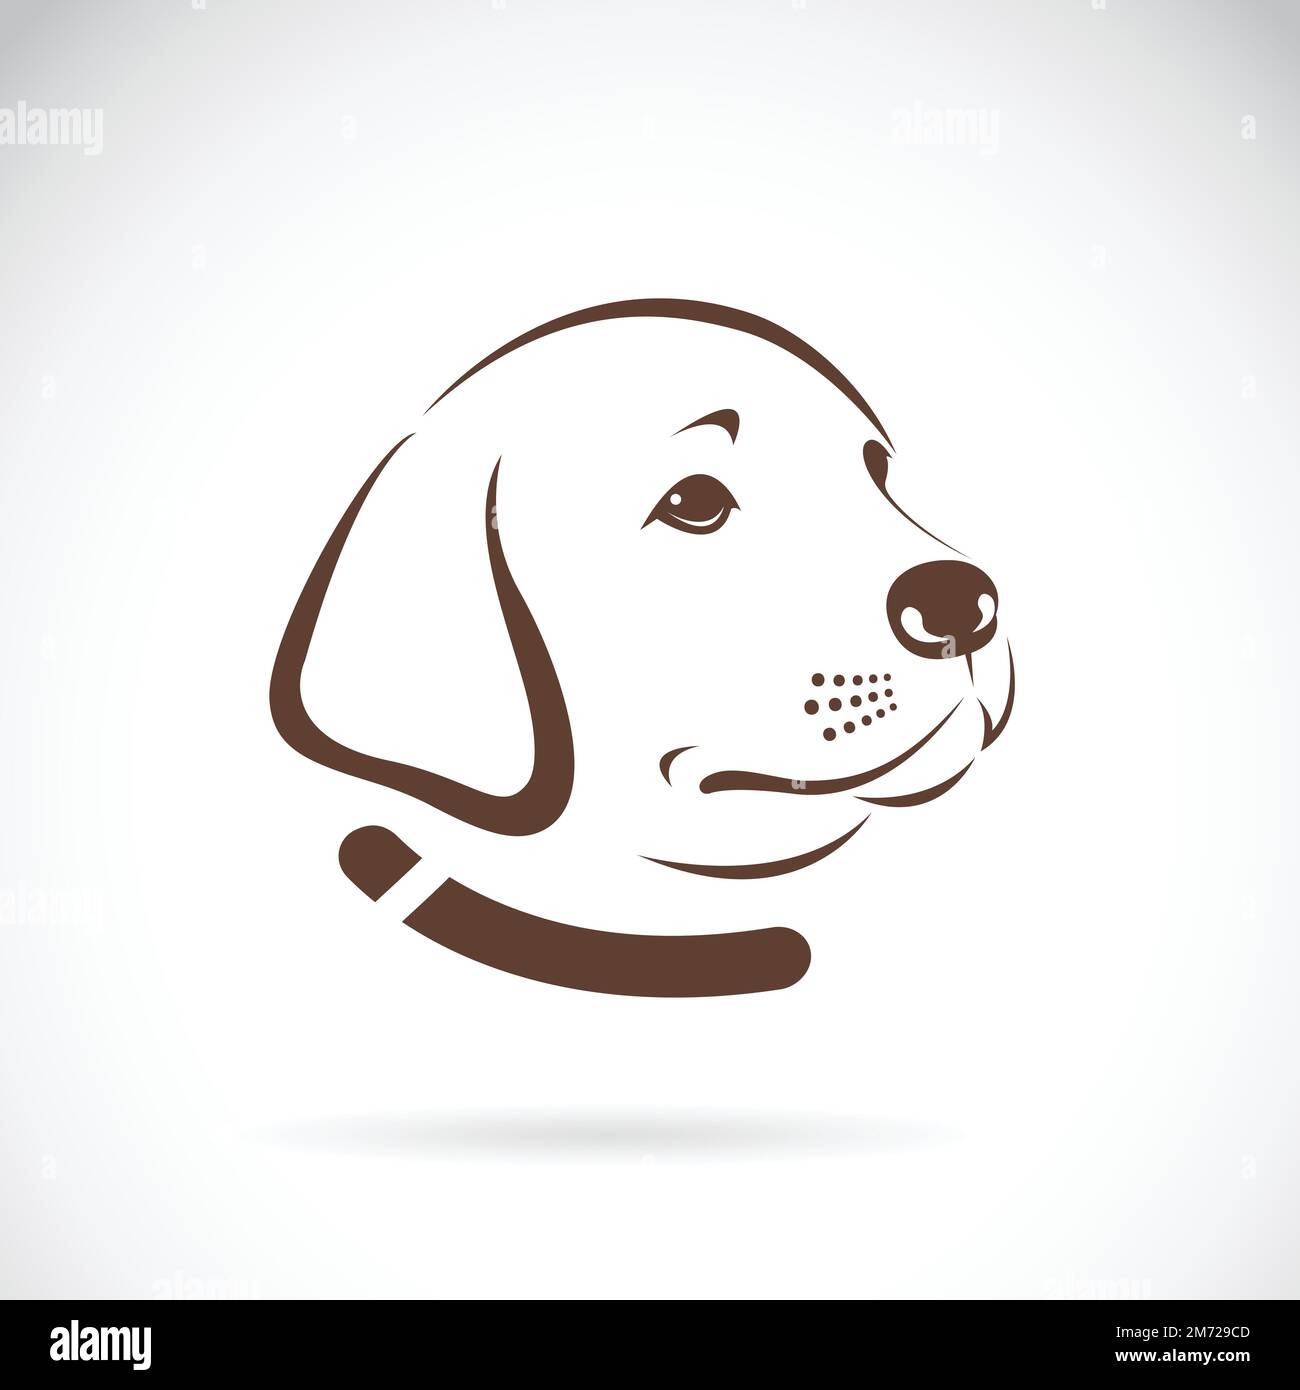 Immagine vettoriale della testa di un cane labrador su sfondo bianco. Illustrazione vettoriale a strati facilmente modificabile. Illustrazione Vettoriale